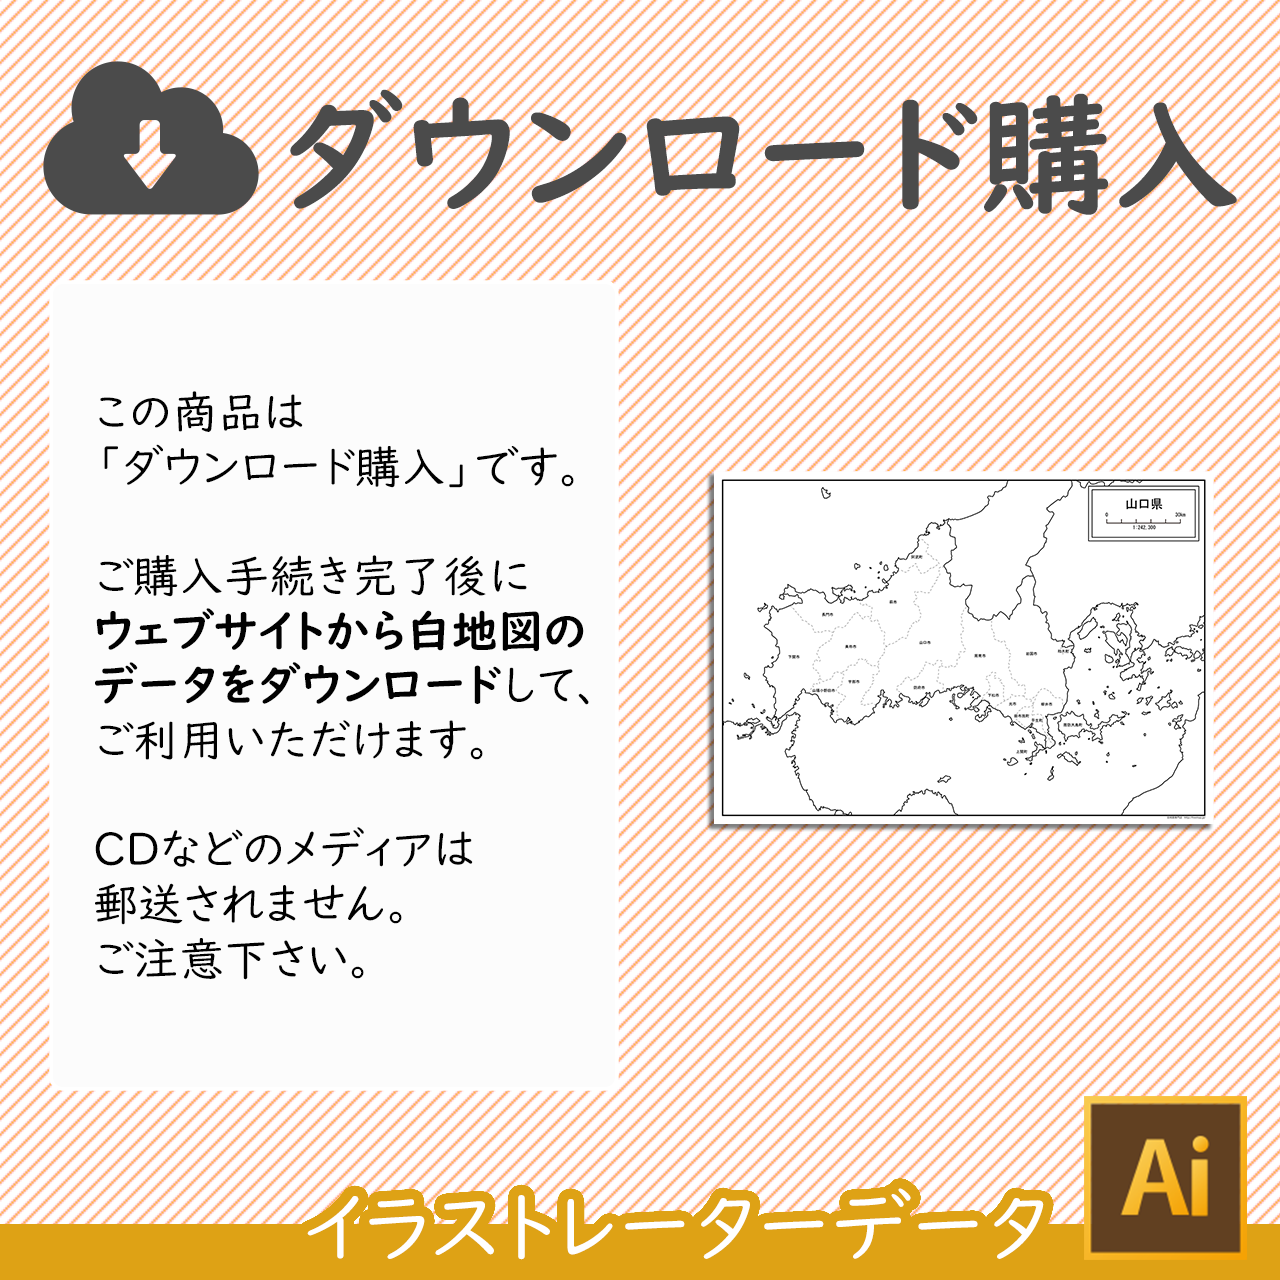 山口県の白地図データ 白地図専門店